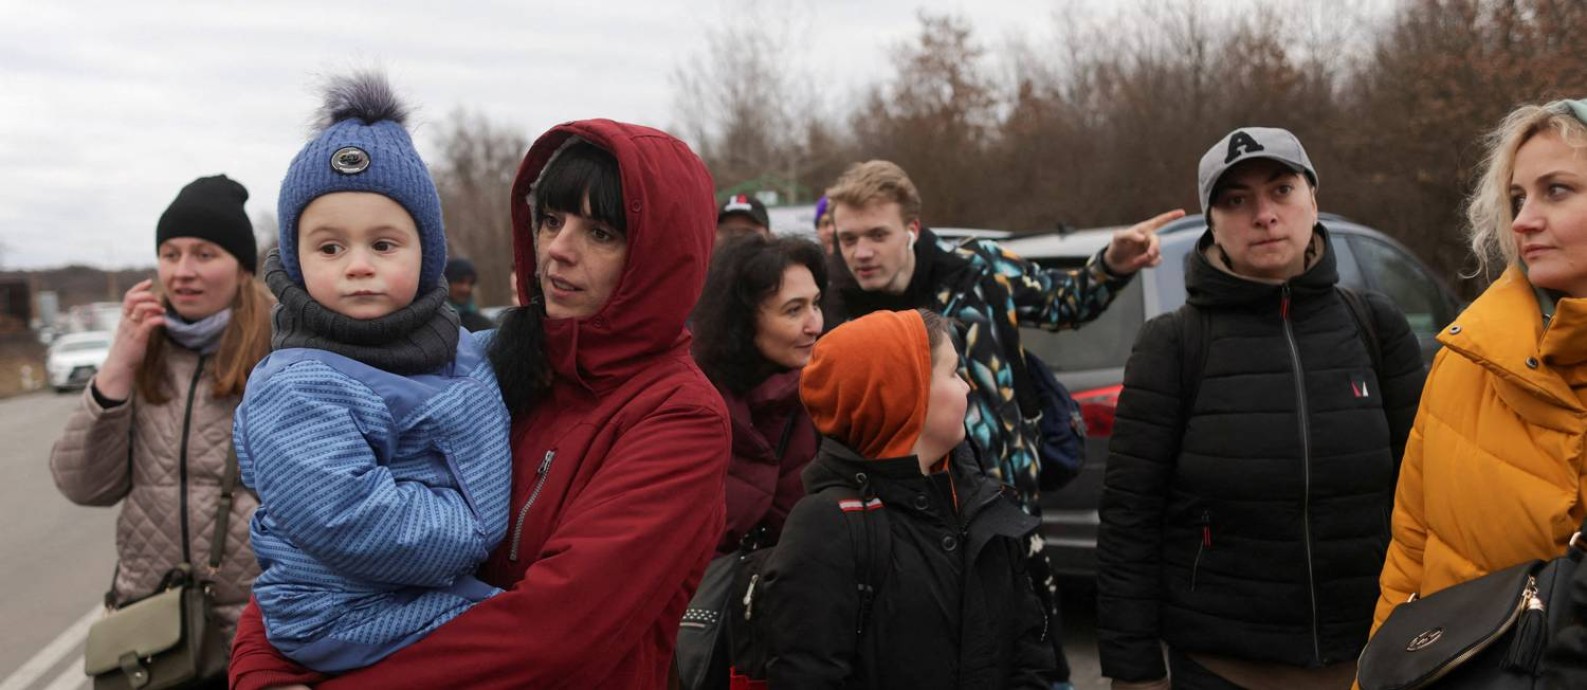 Pessoas fugindo da invasão da Rússia na Ucrânia aguardam transporte após chegarem na Eslováquia Foto: Lukasz Glowala / Reuters